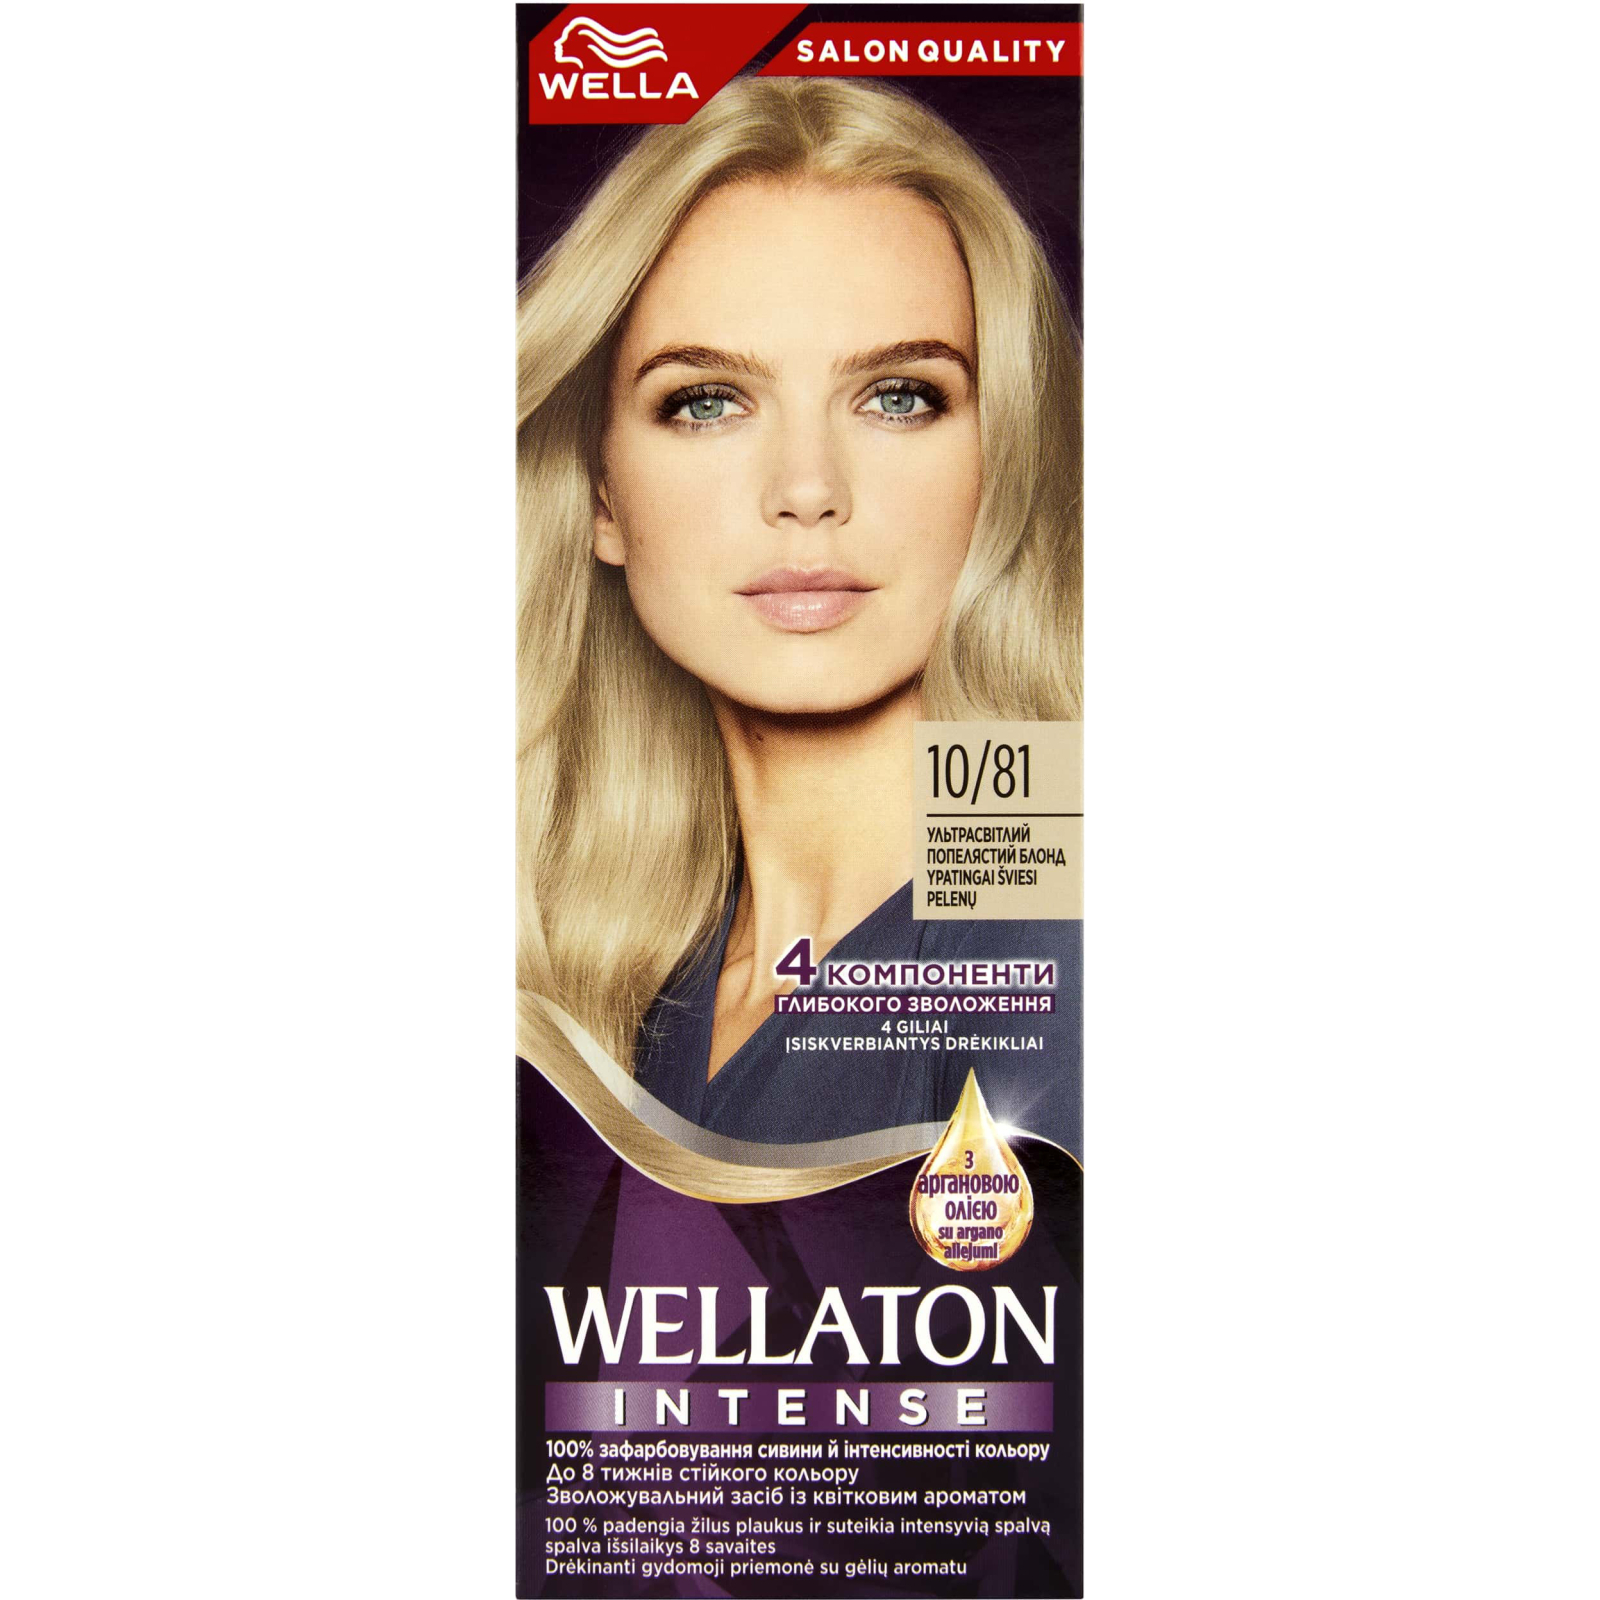 Краска для волос Wellaton 7/0 Осенние листья (4056800023127/4056800756858)